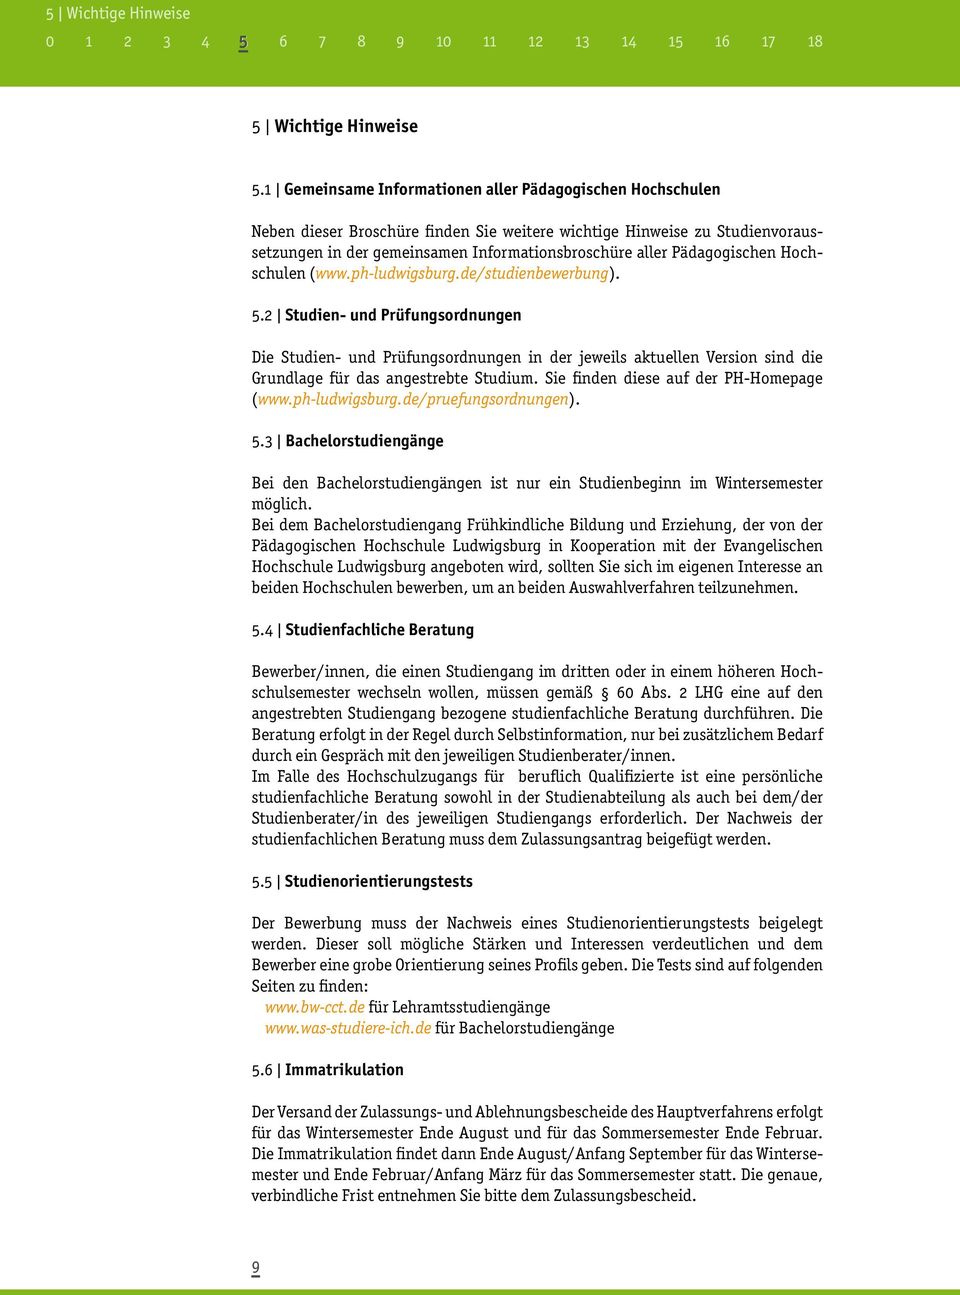 Pädagogischen Hochschulen (www.ph-ludwigsburg.de/studienbewerbung). 5.